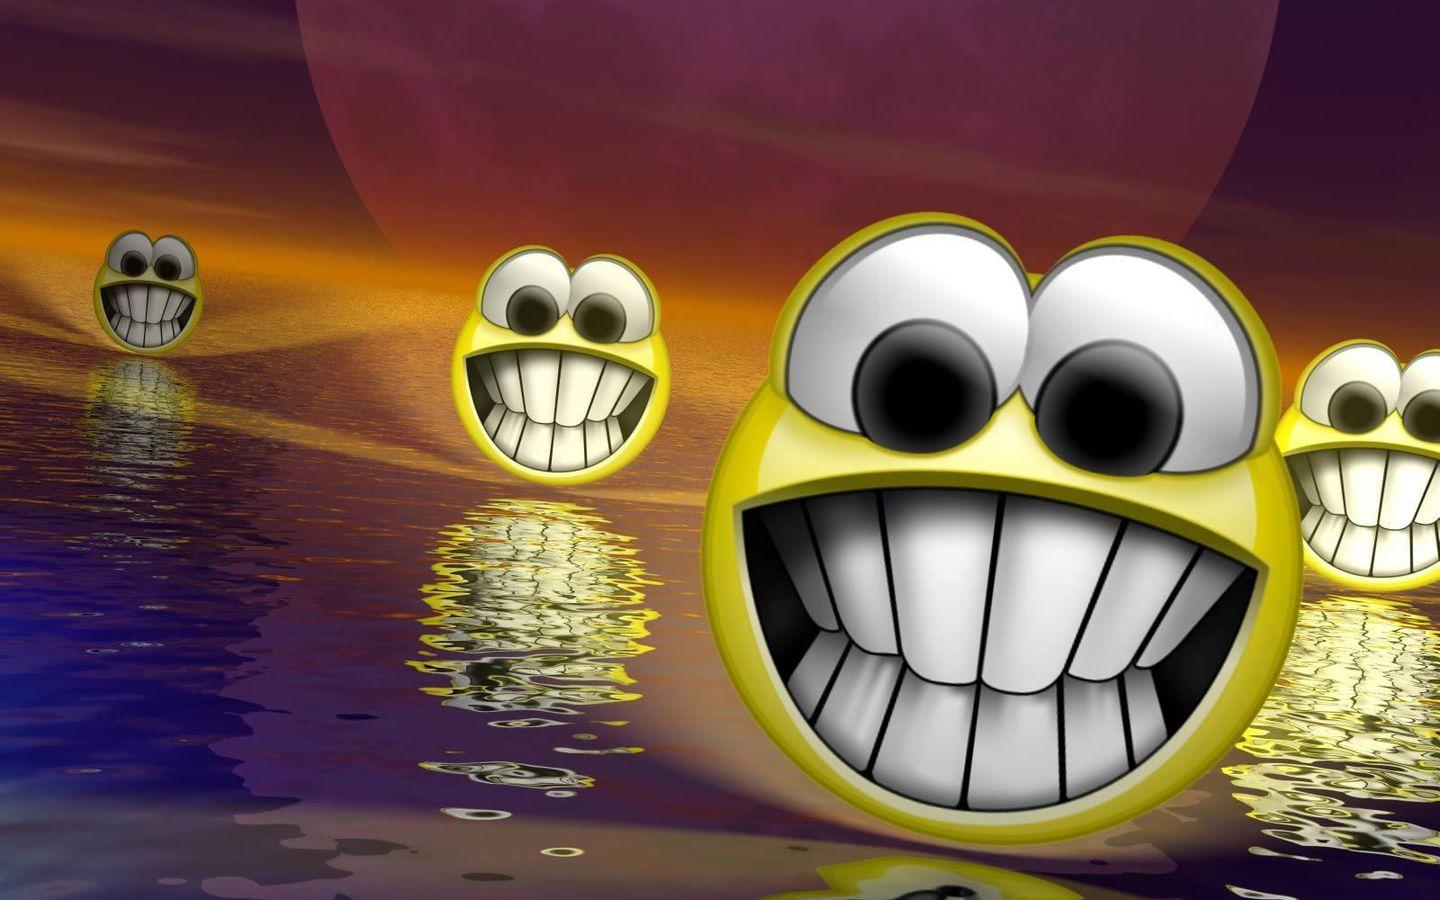 Laughing Emoji Wallpaper. Laughing